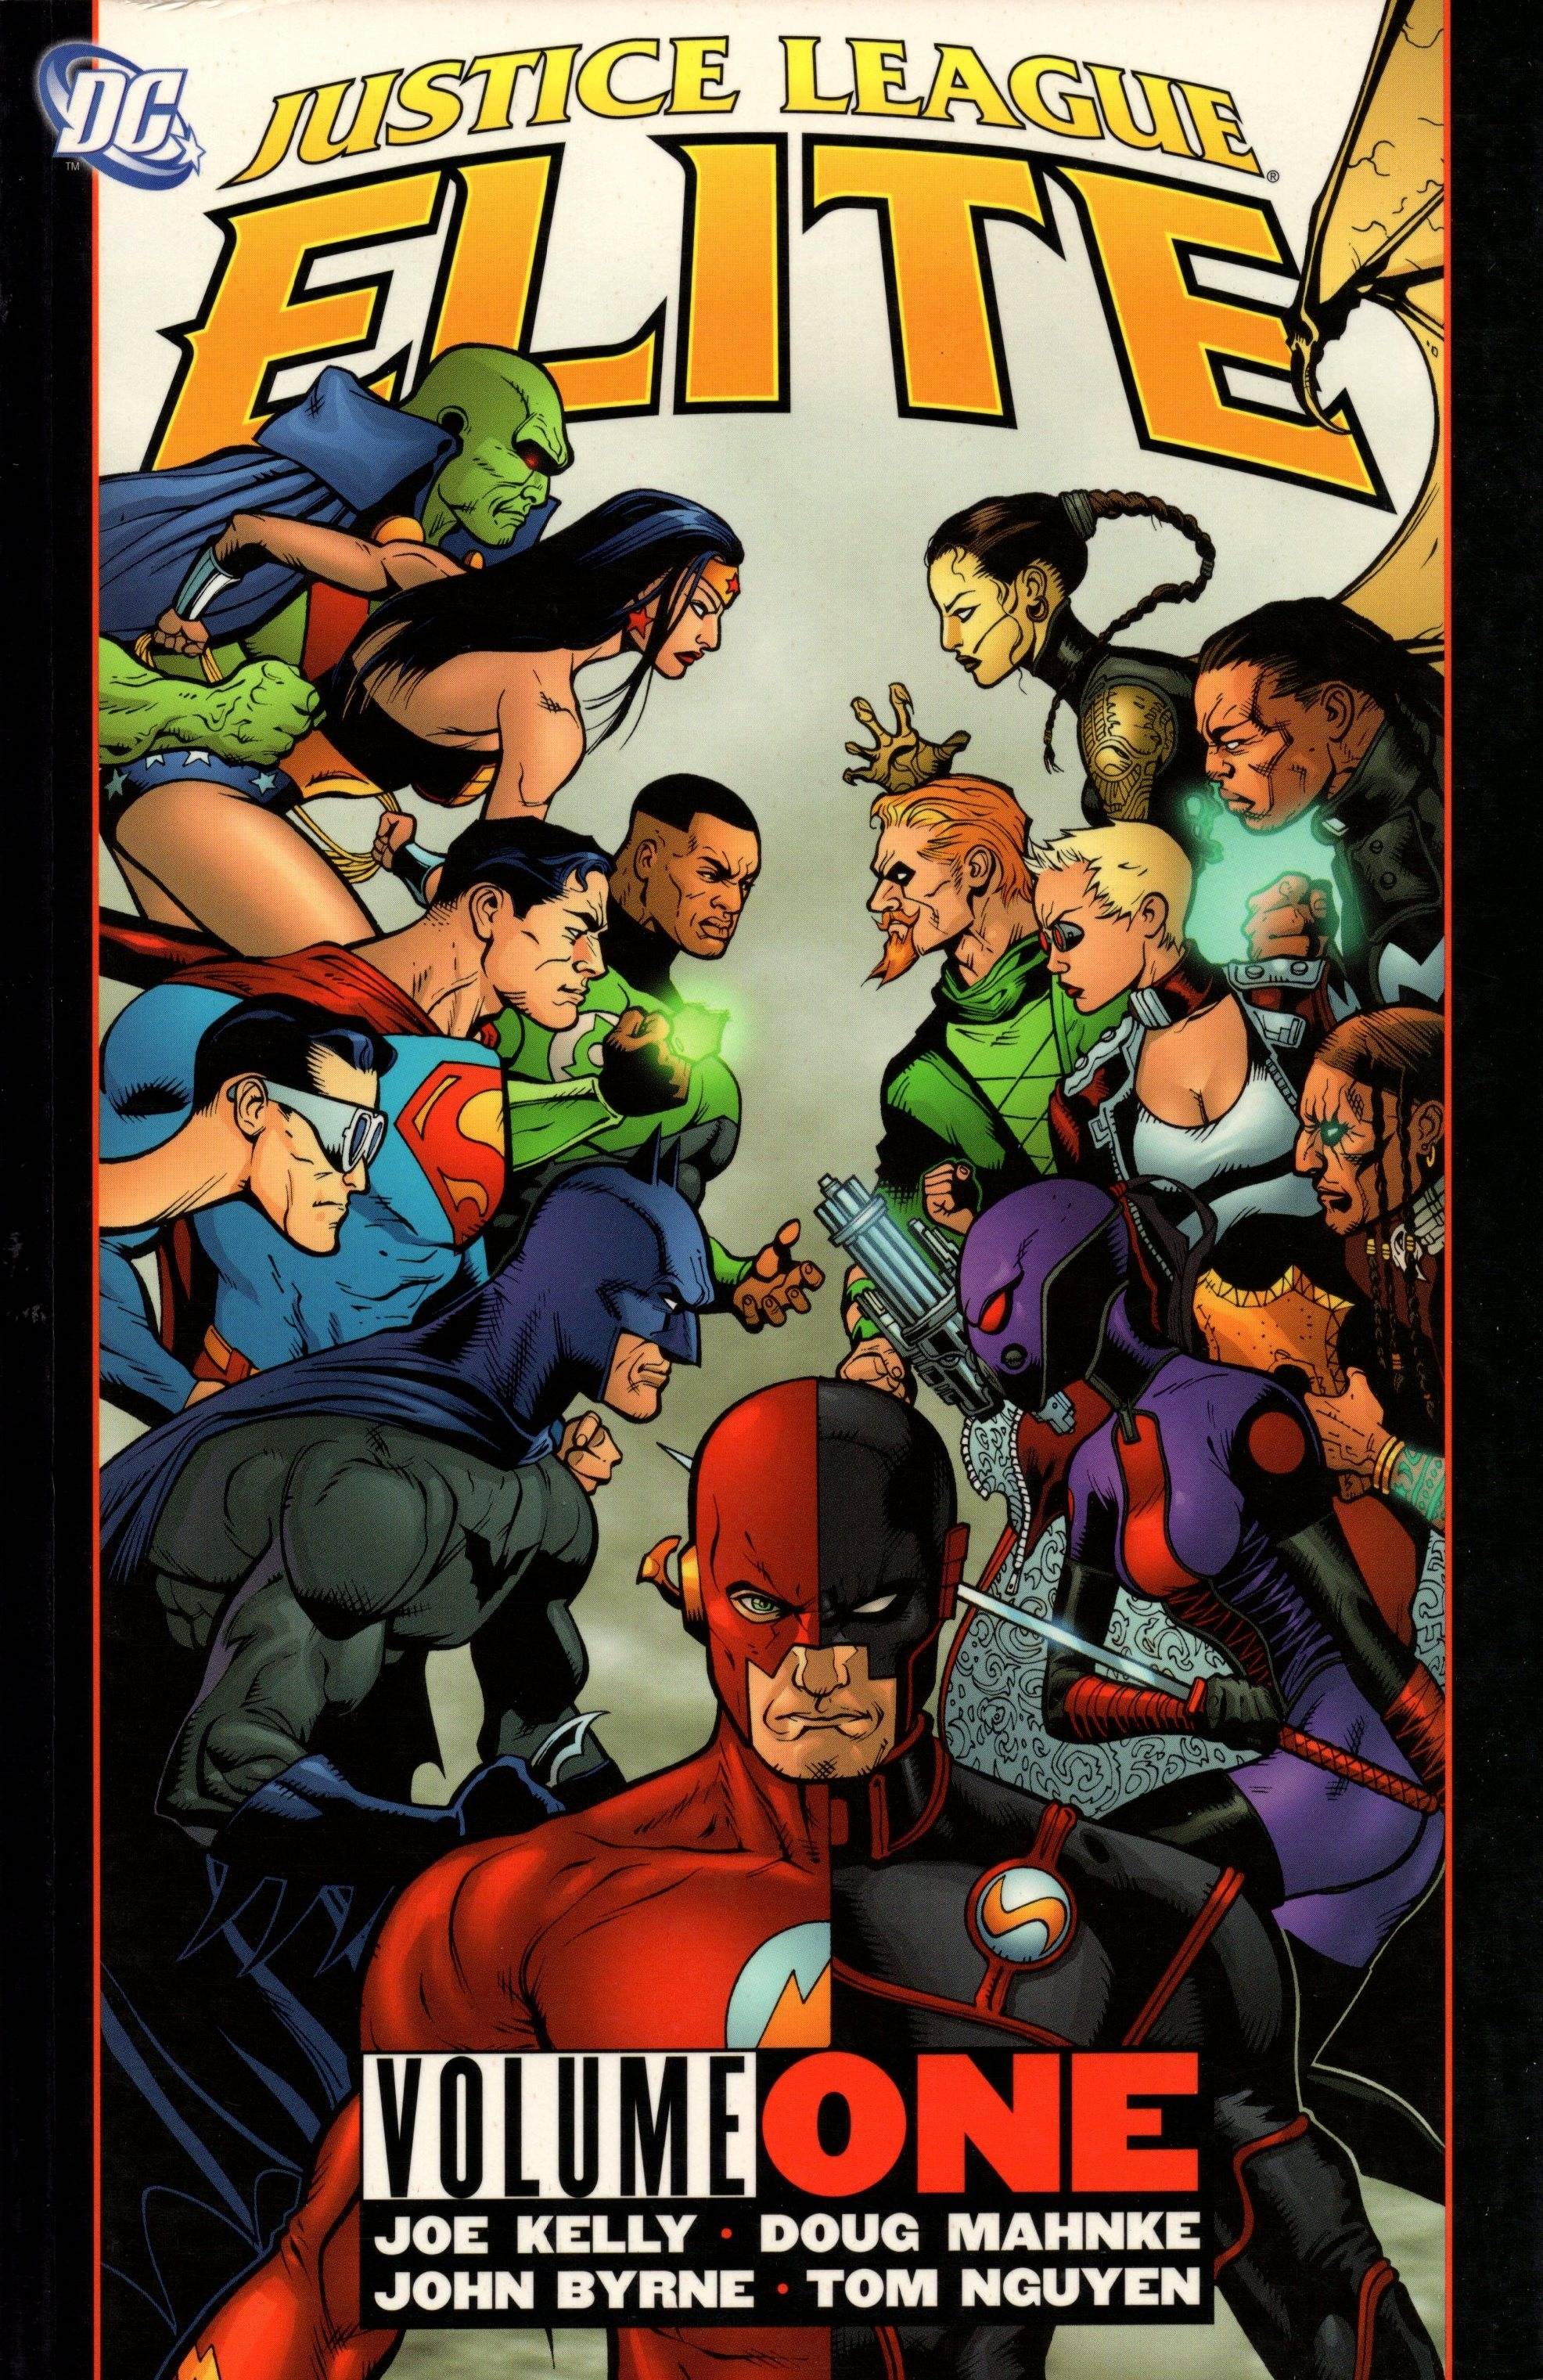 Justice League Elite Graphic Novel Volume 1